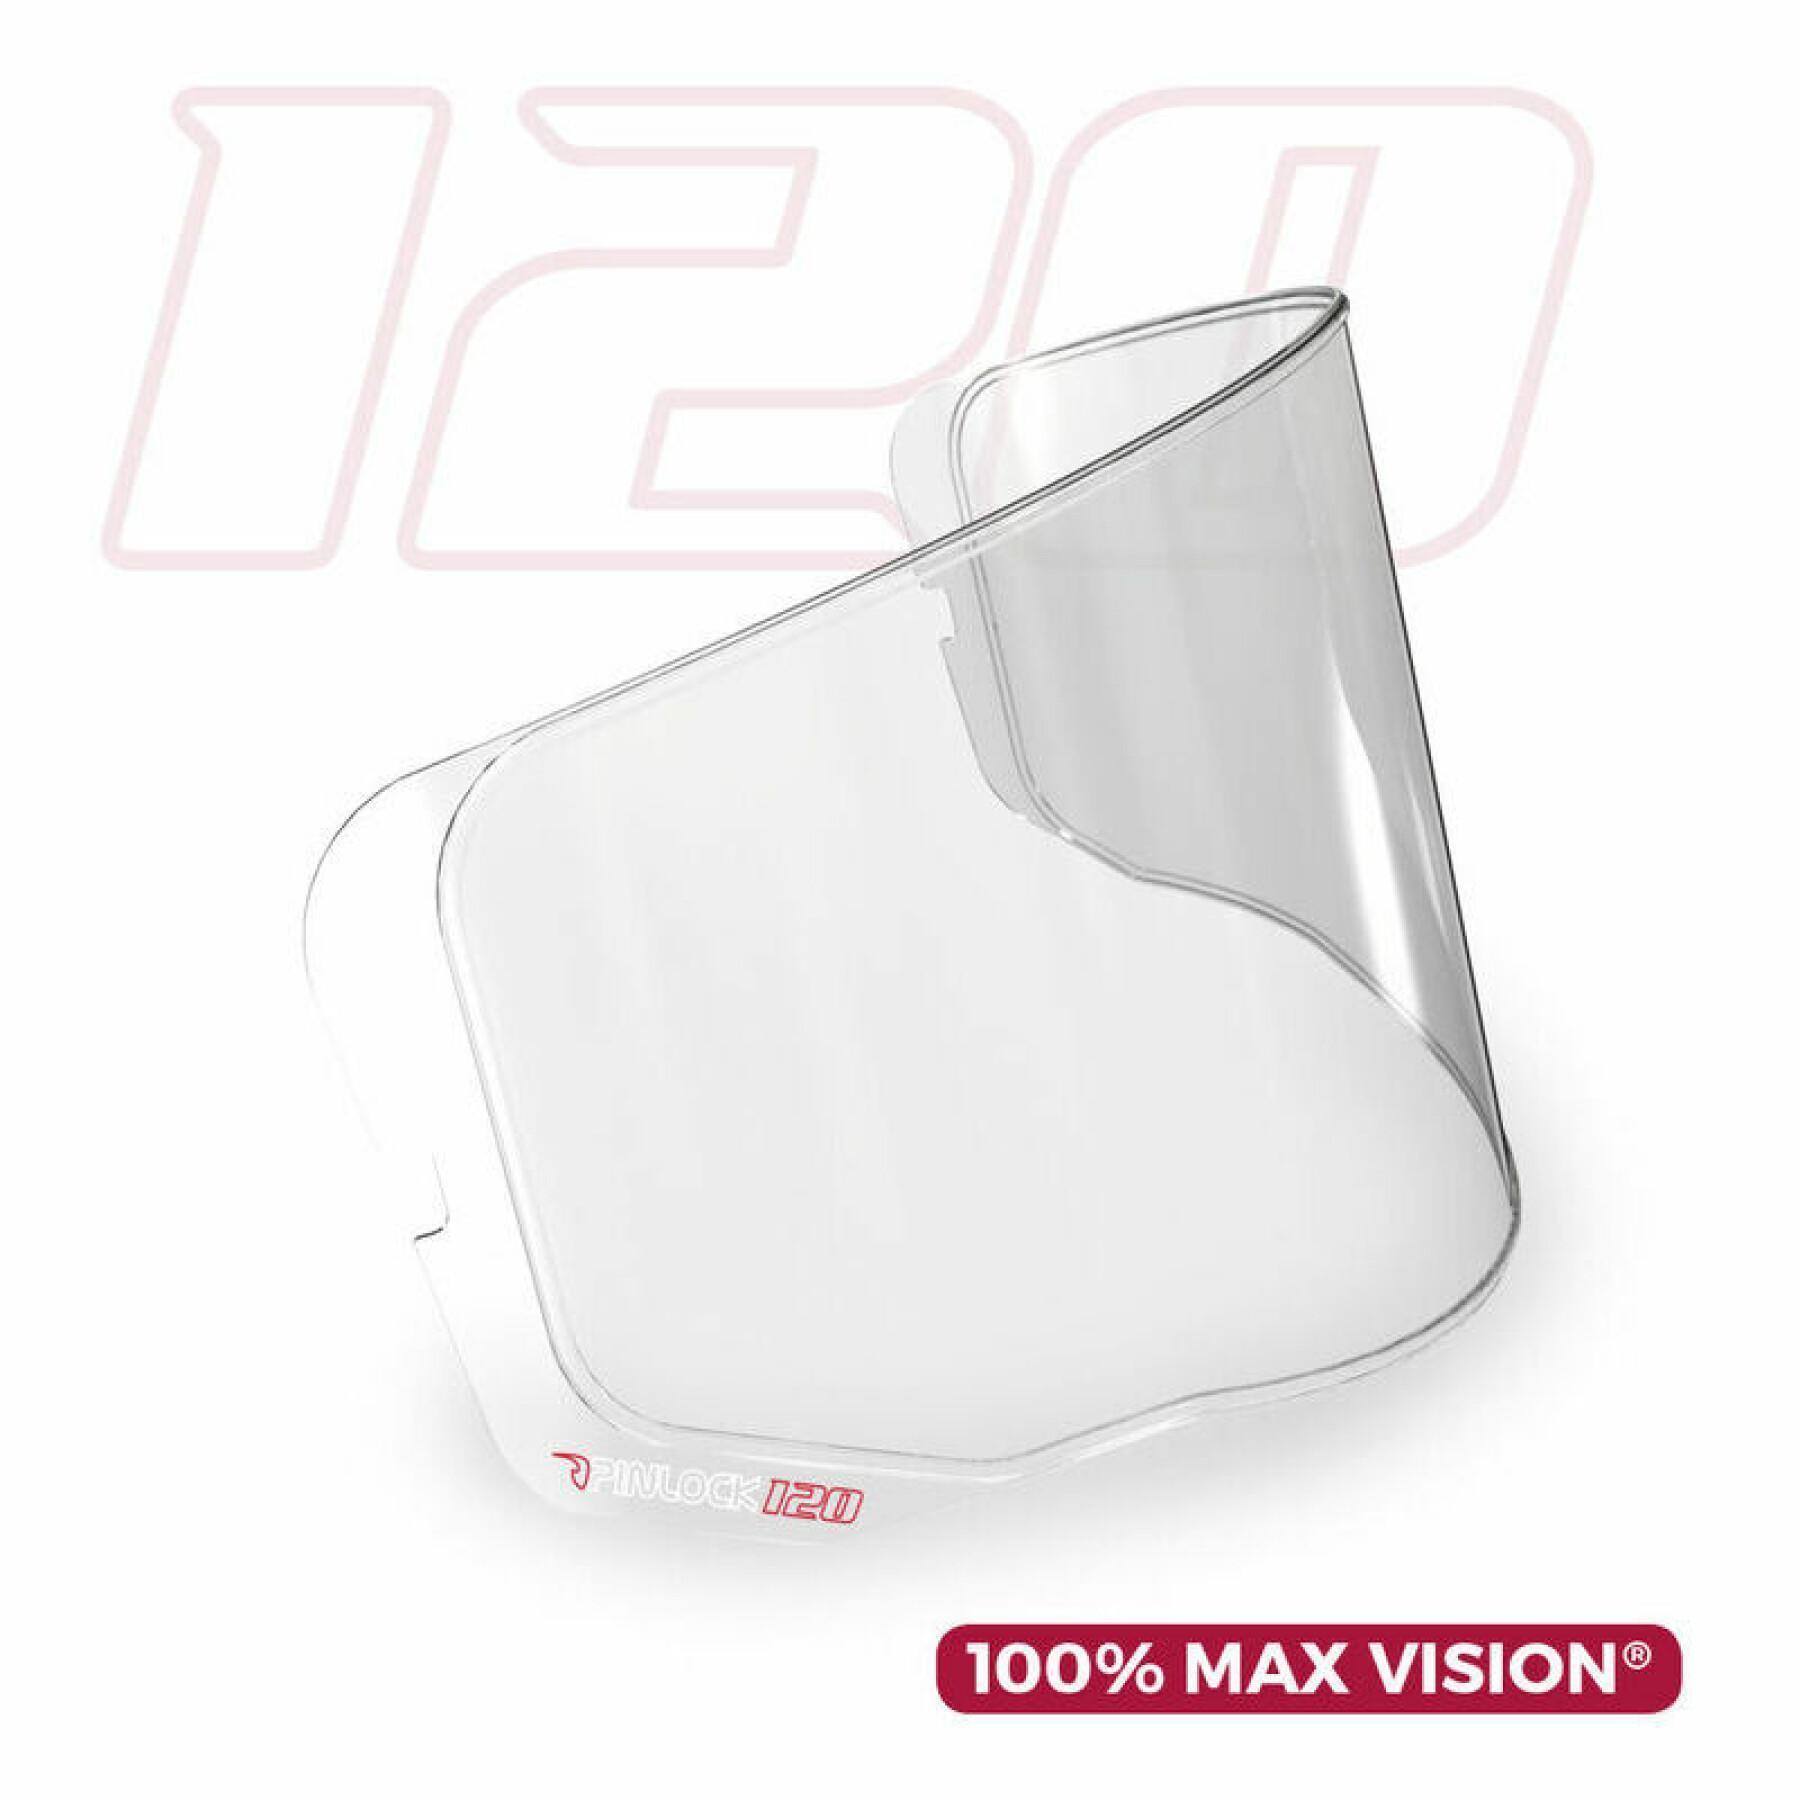 Pantalla de casco de moto Pinlock 100% Max Vision Panovision